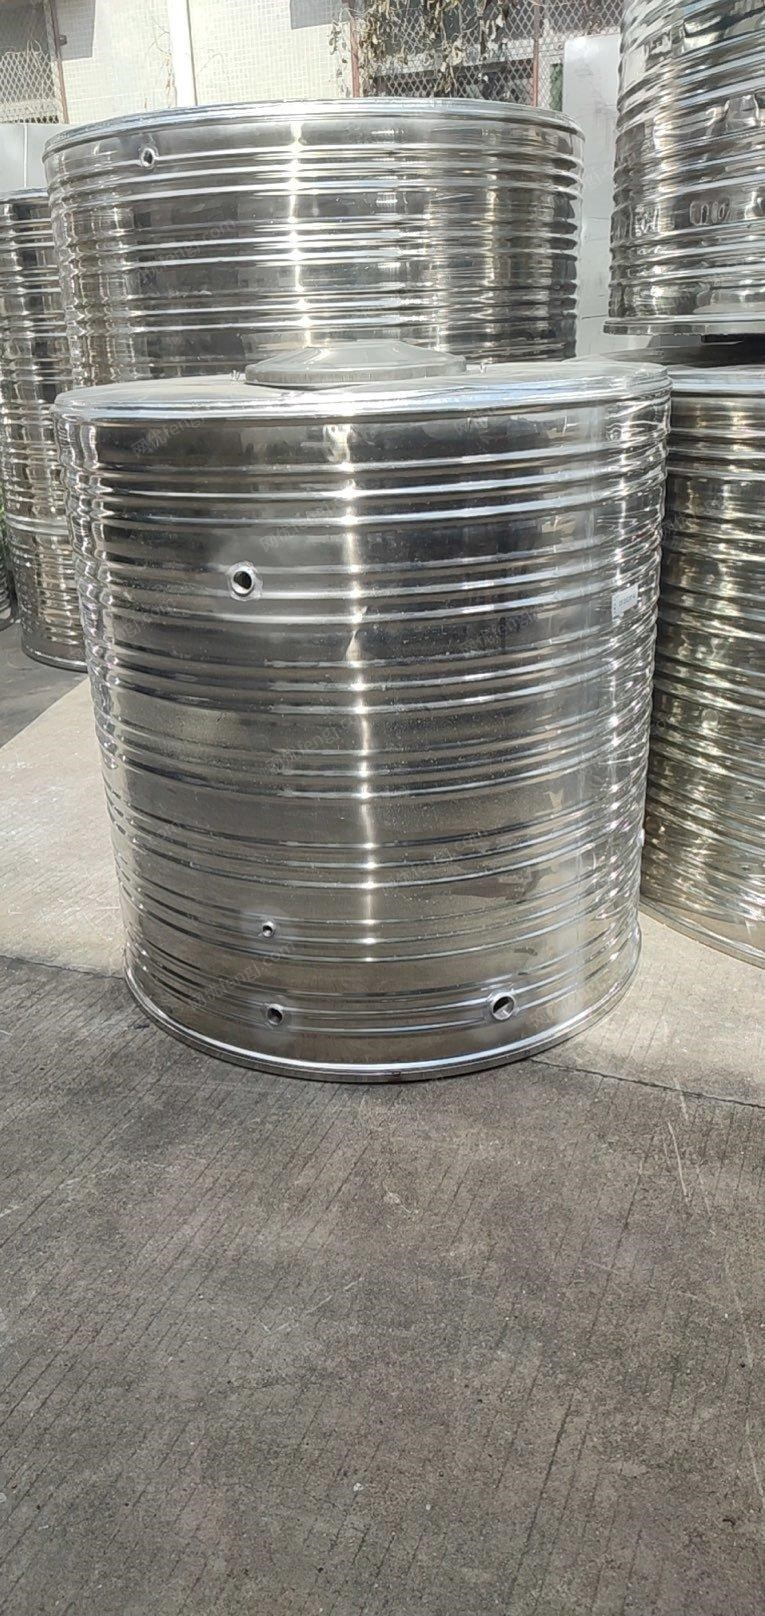 安徽蚌埠转让不锈钢保温 水箱 消防水箱 圆形方形空气能太阳能热水器水塔